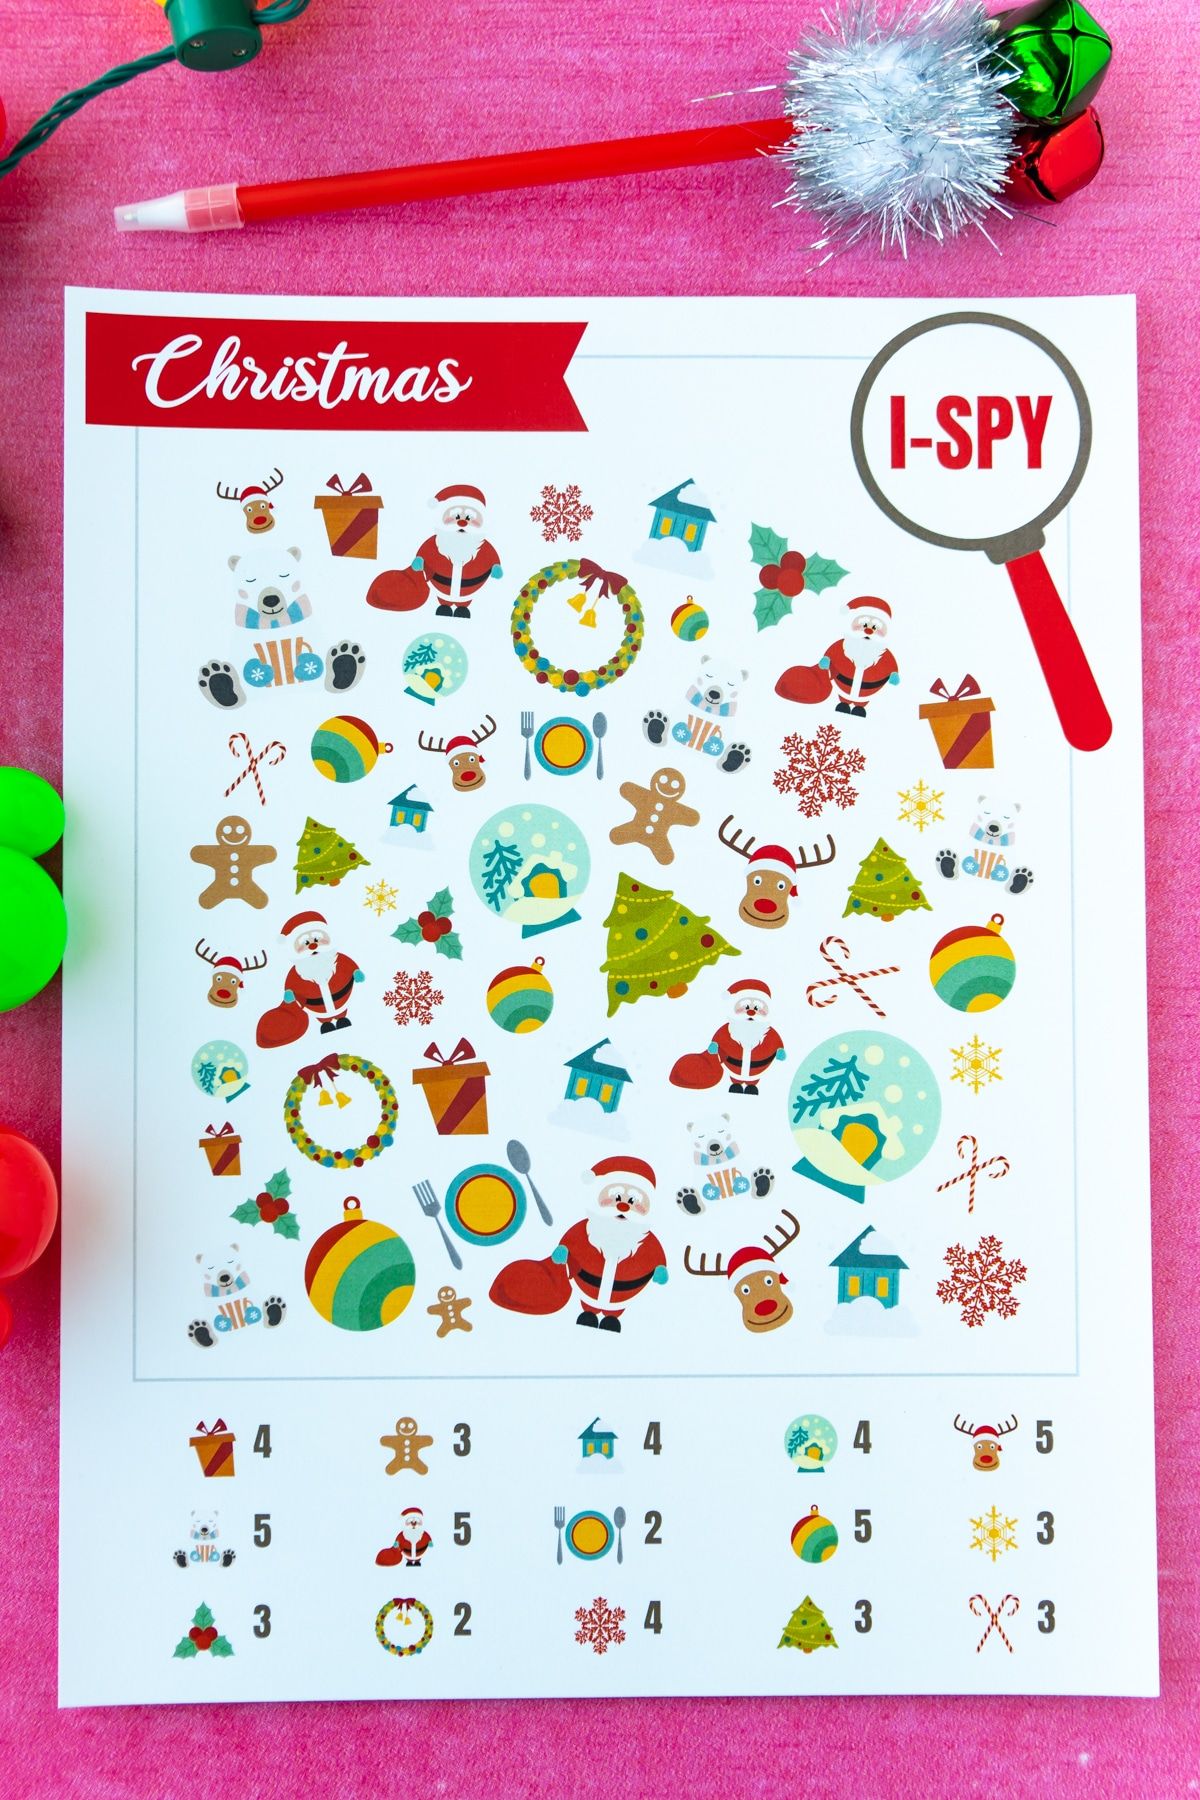 Mencetak permainan i-spy Krismas dengan latar belakang merah jambu